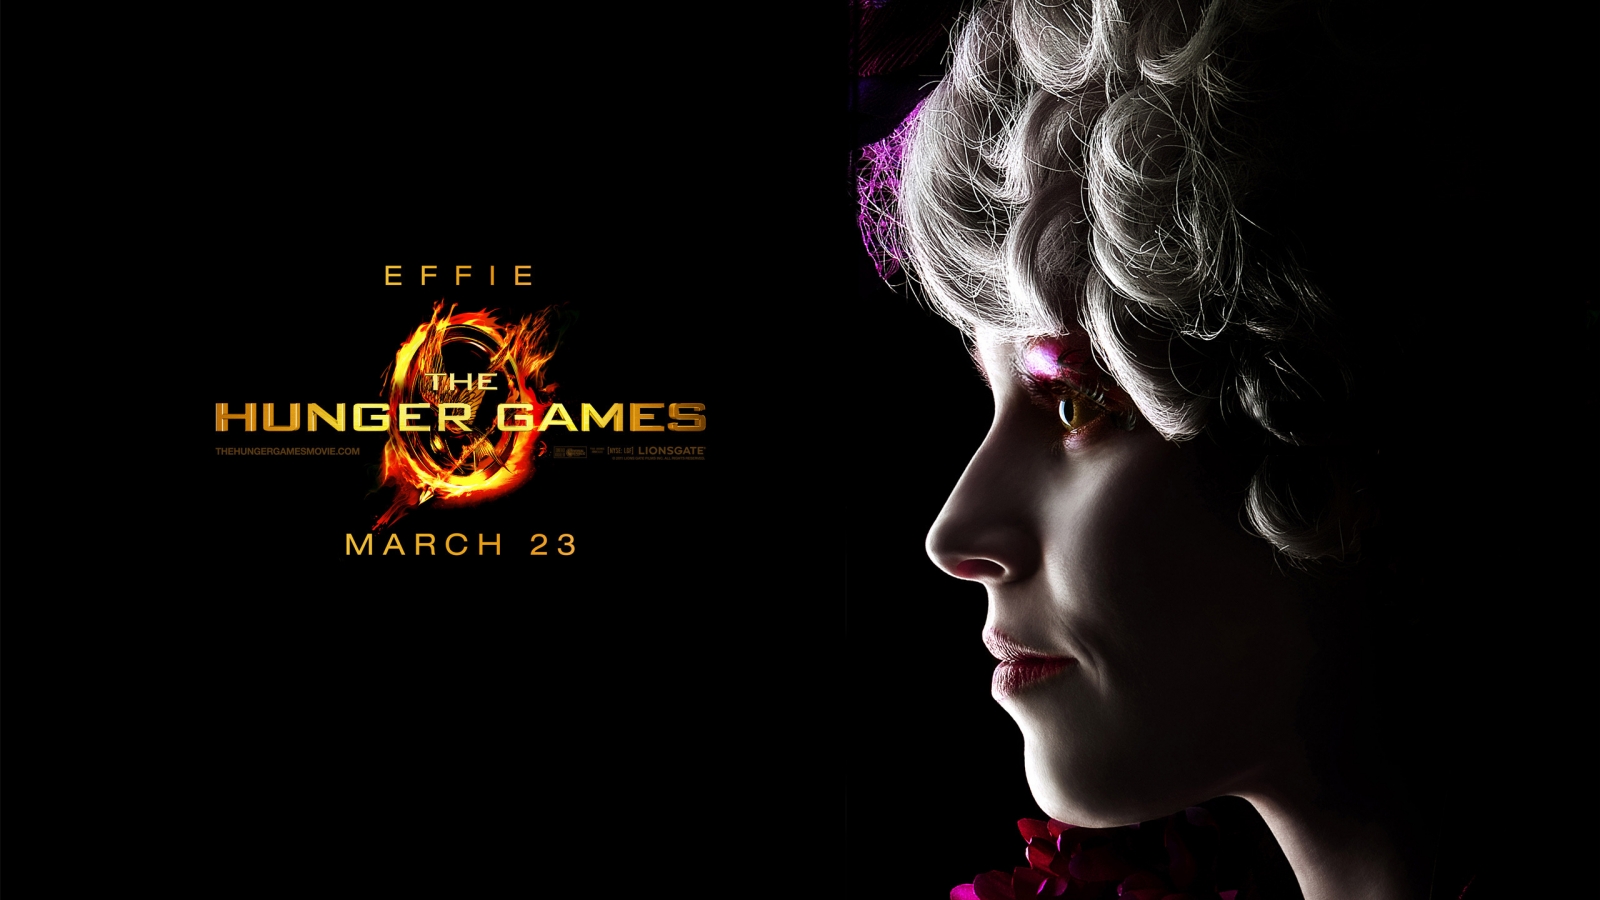 The Hunger Games Effie for 1600 x 900 HDTV resolution